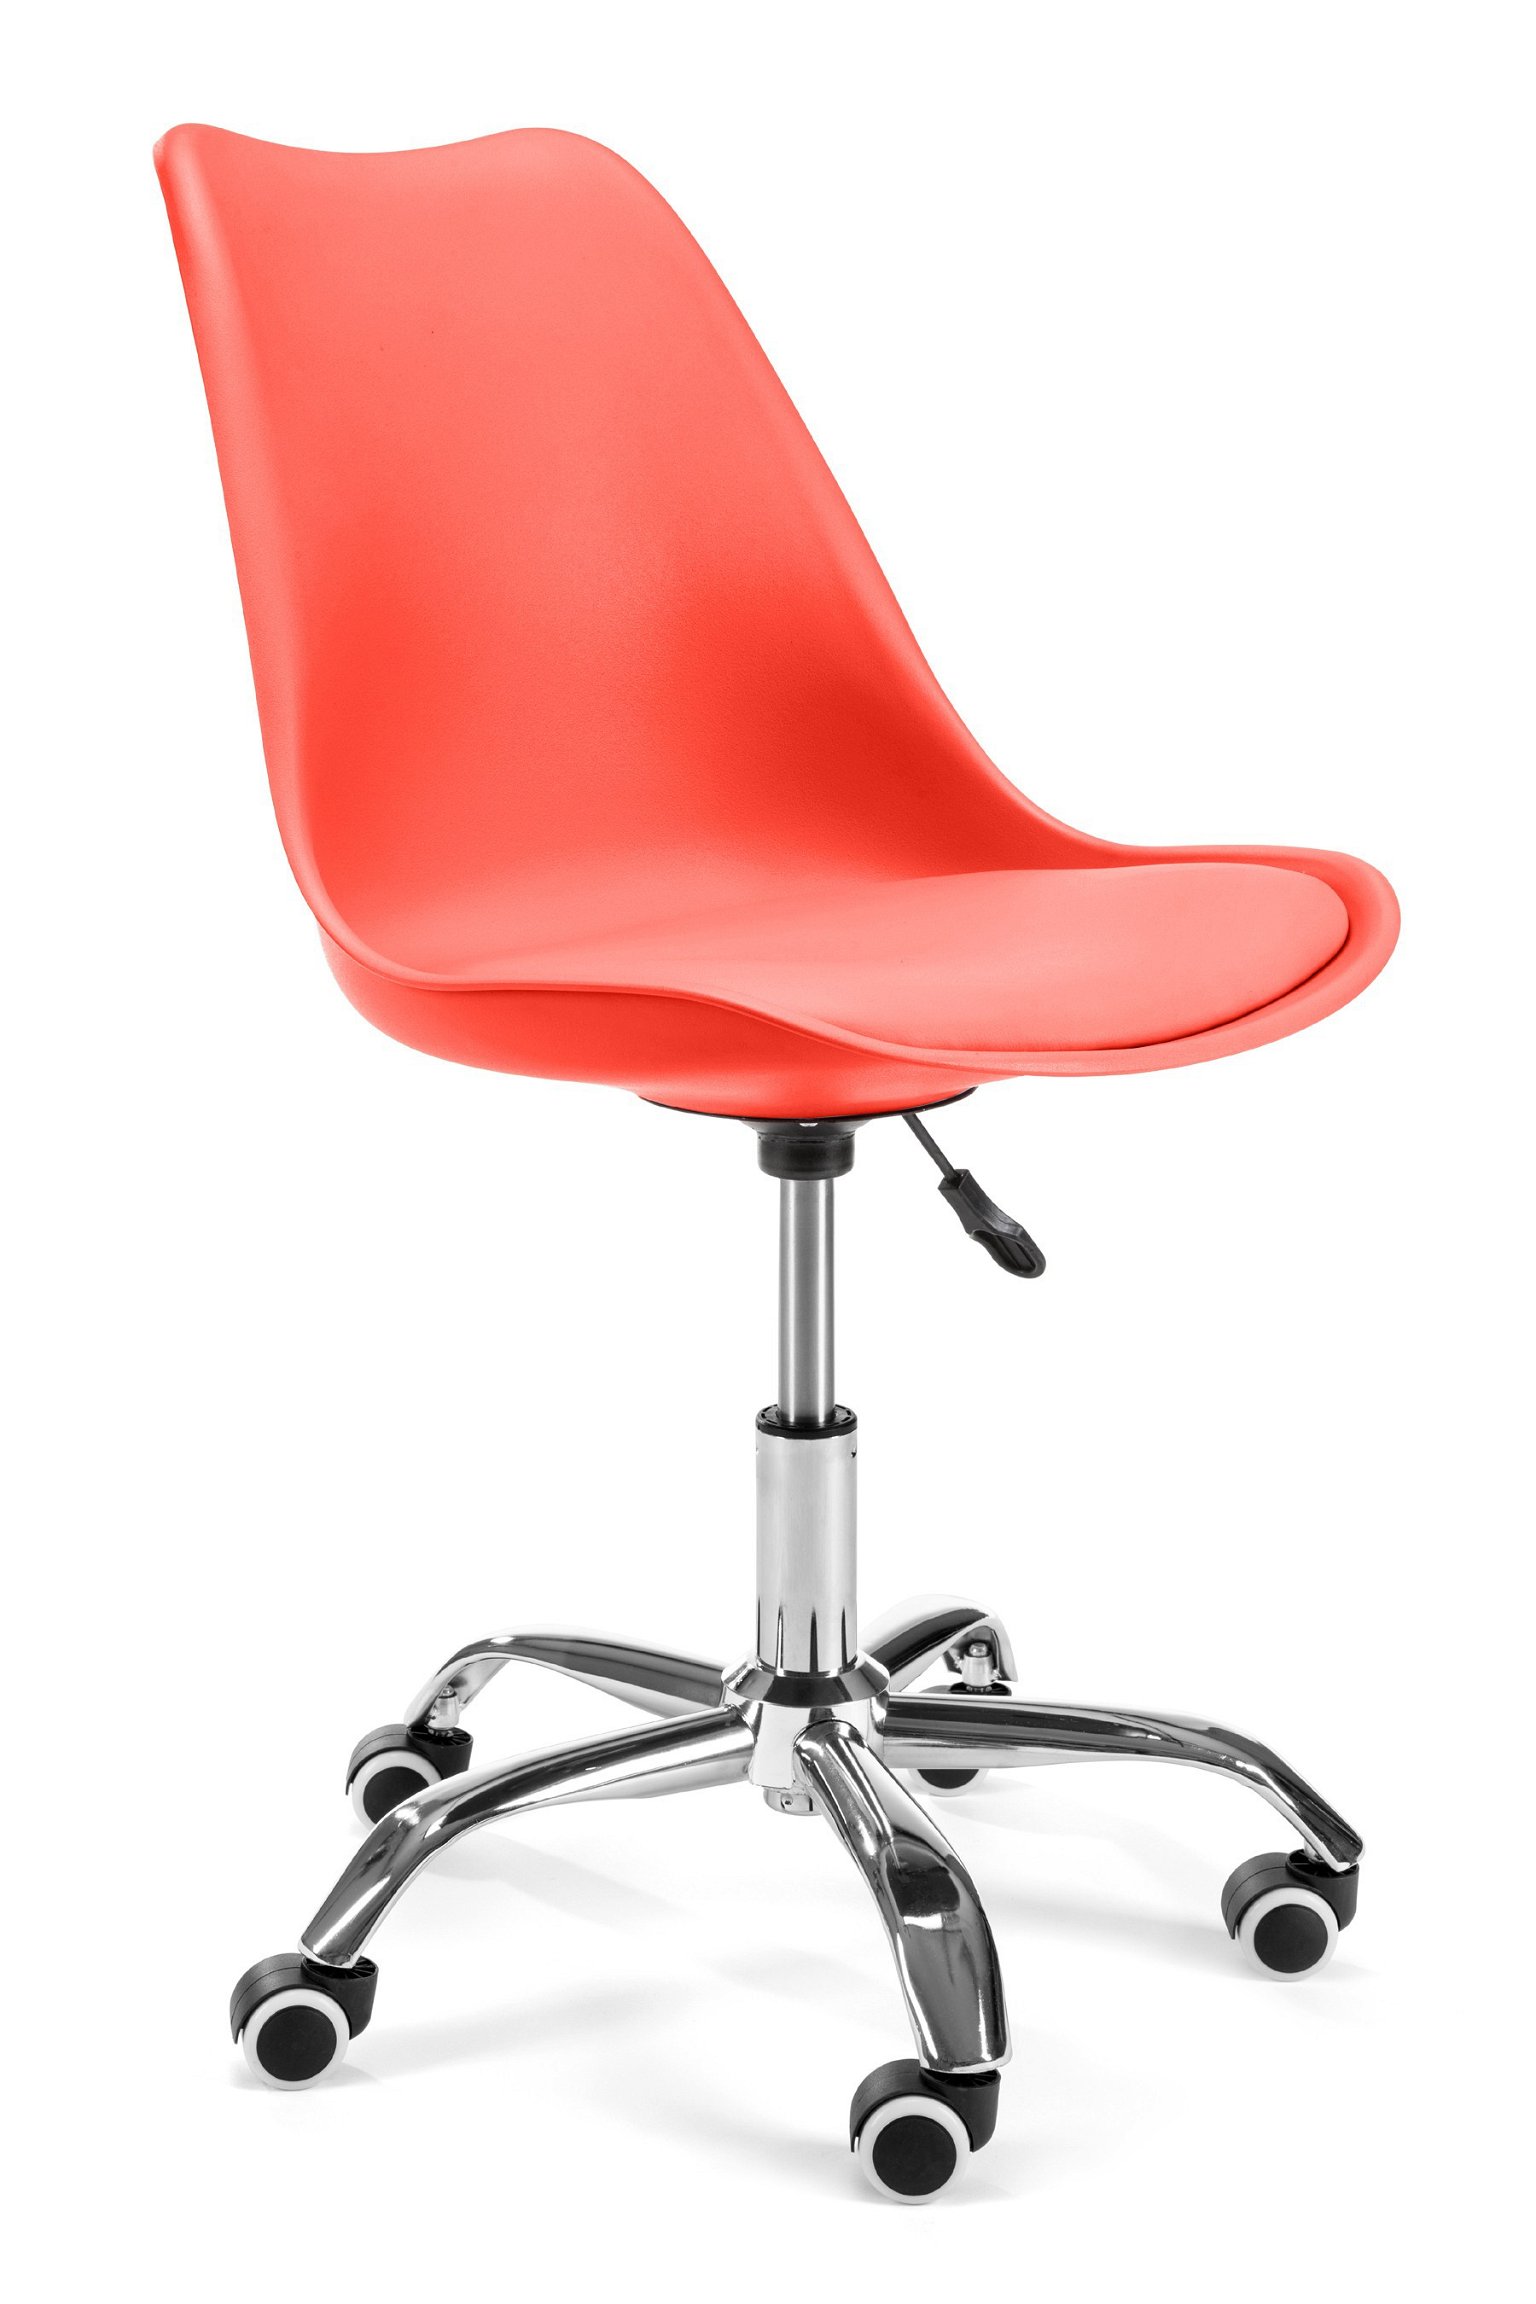 Vaikiška kėdė FD005, raudona